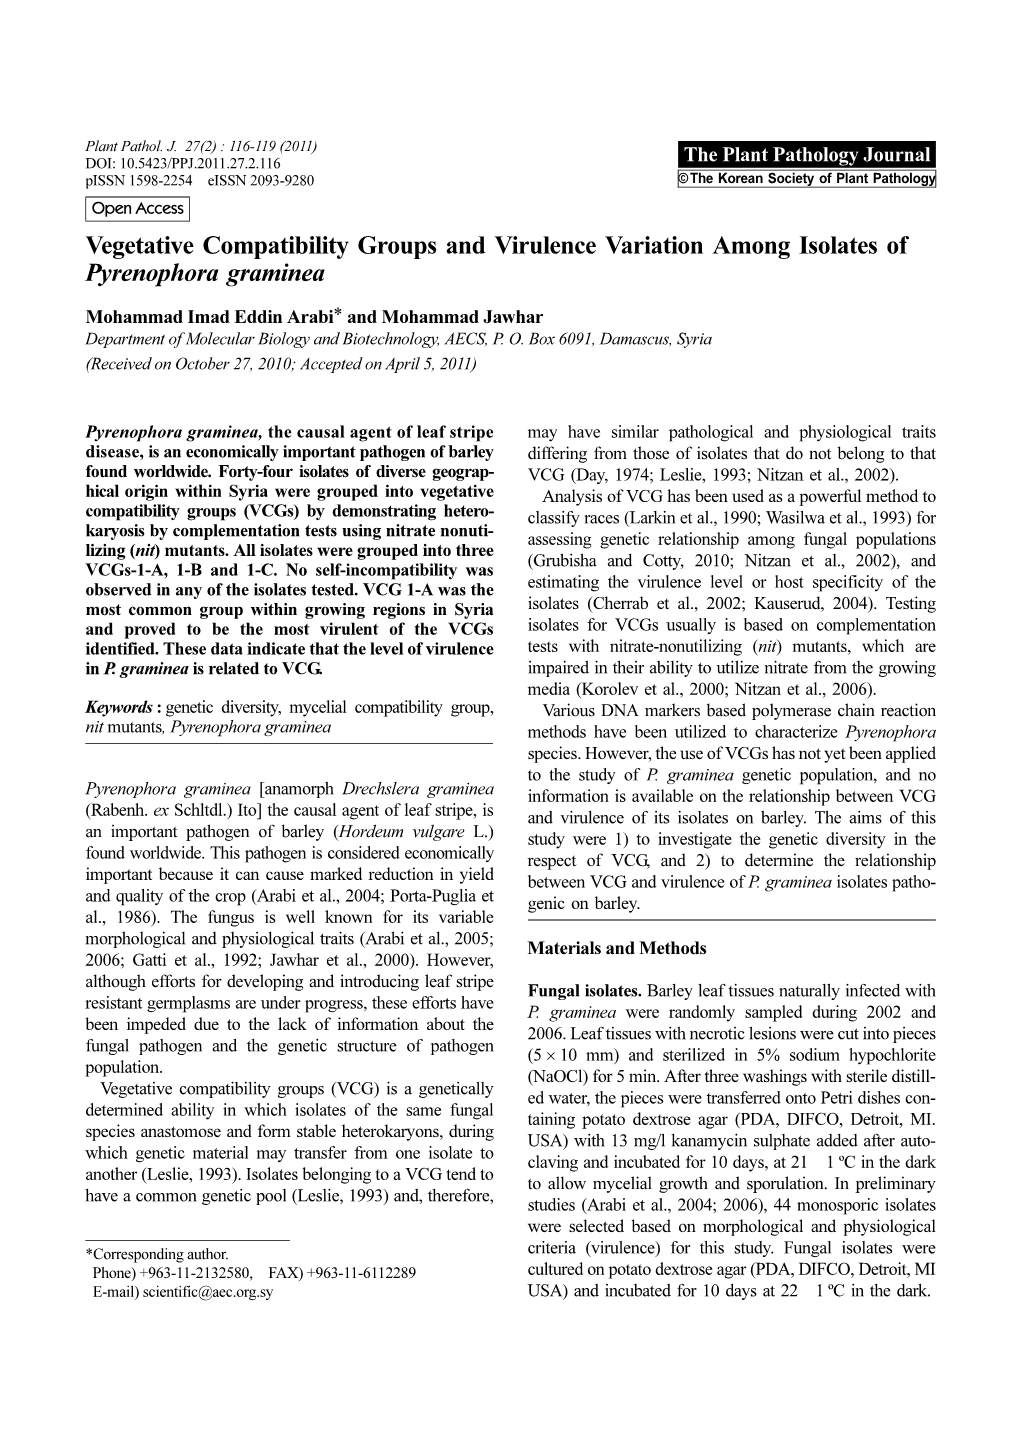 Vegetative Compatibility Groups and Virulence Variation Among Isolates